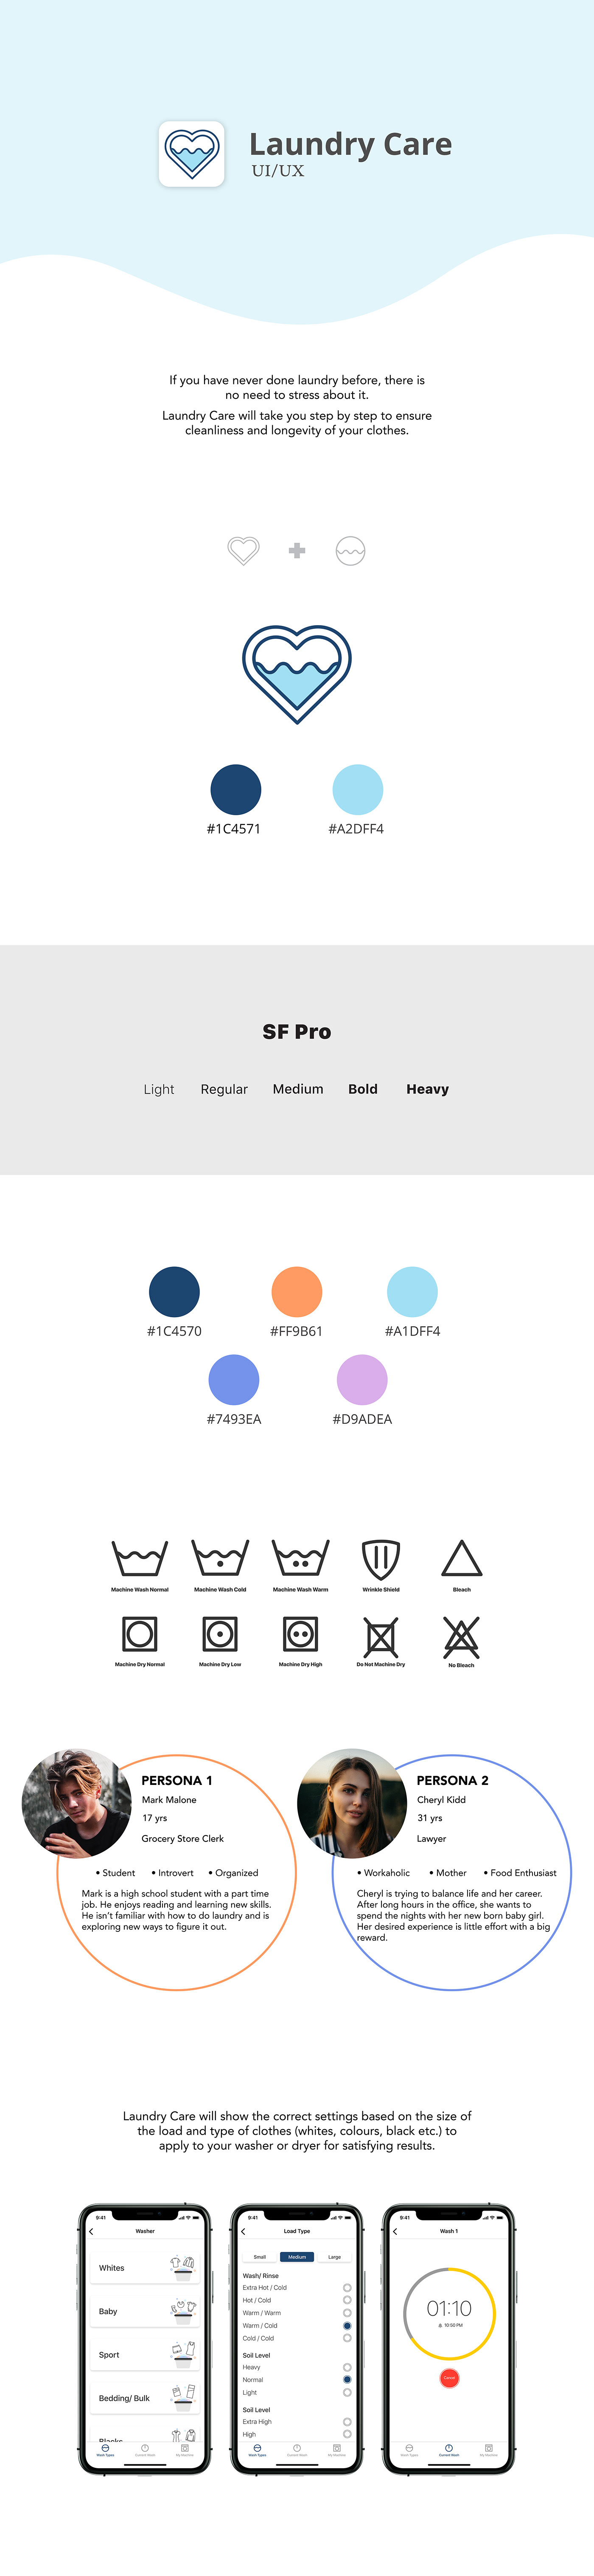 ui design UX design interaction graphic laundry android app logo design